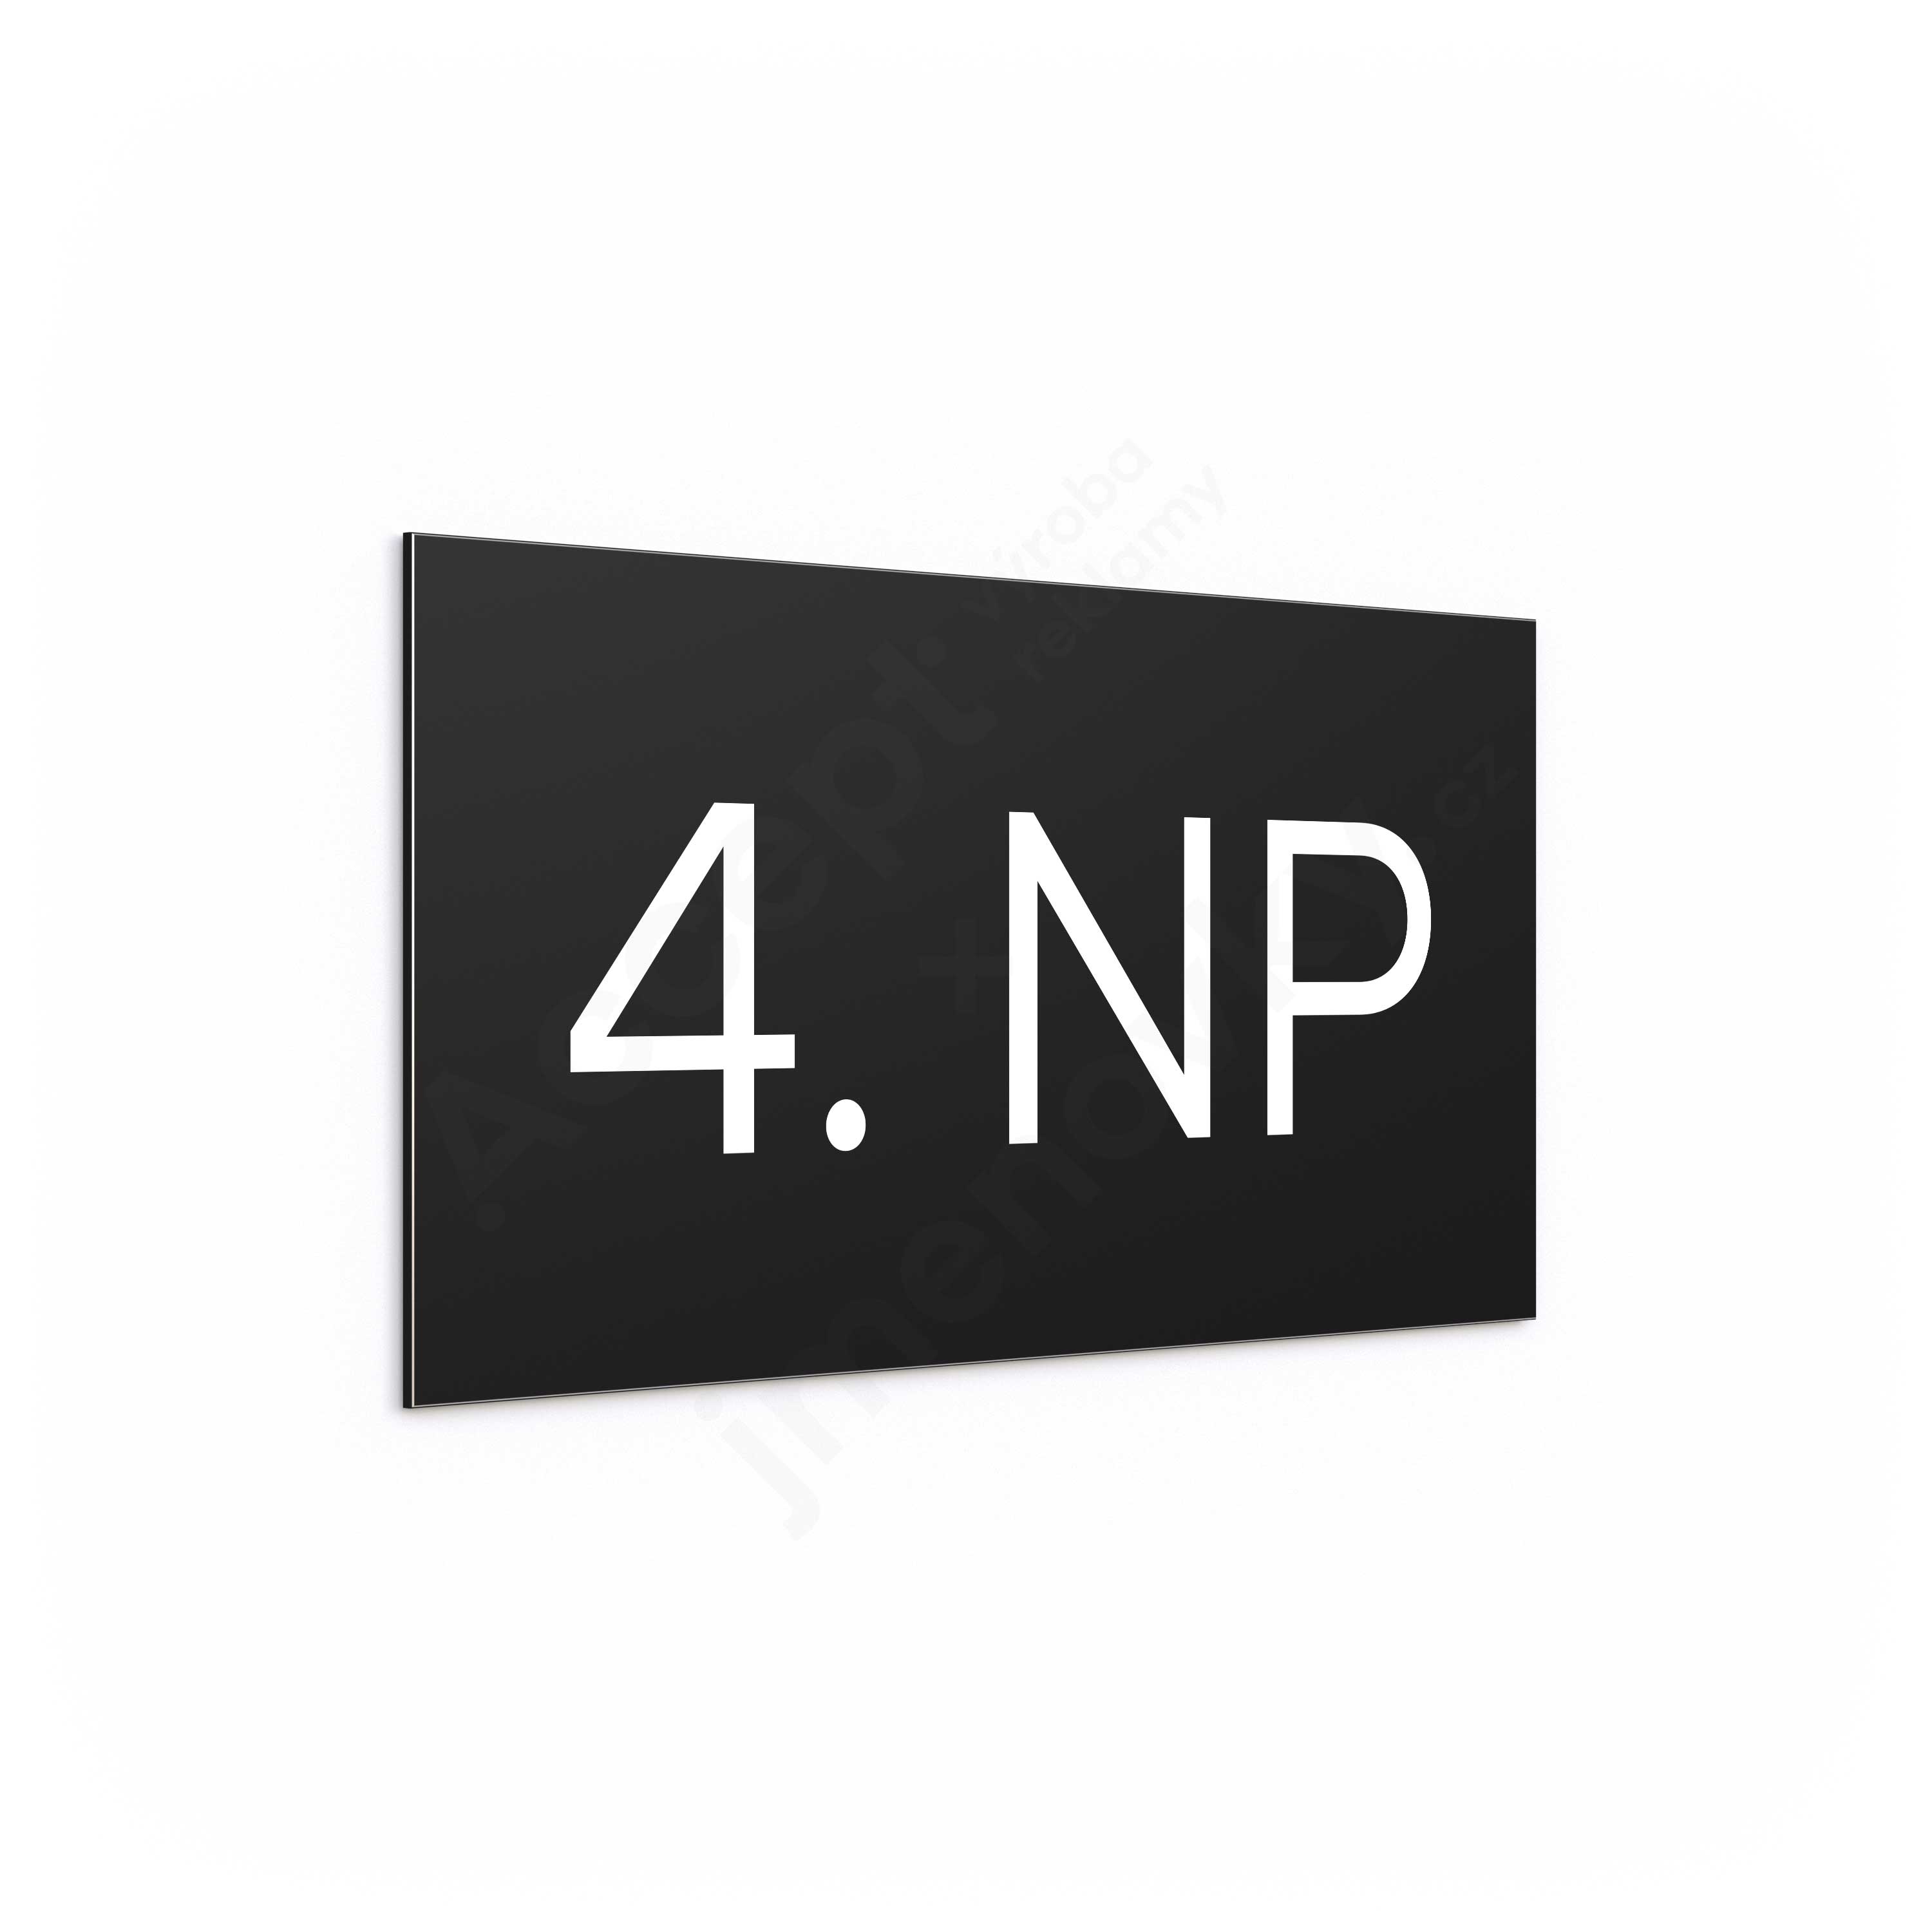 Označení podlaží "4. NP" - černá tabulka - bílý popis